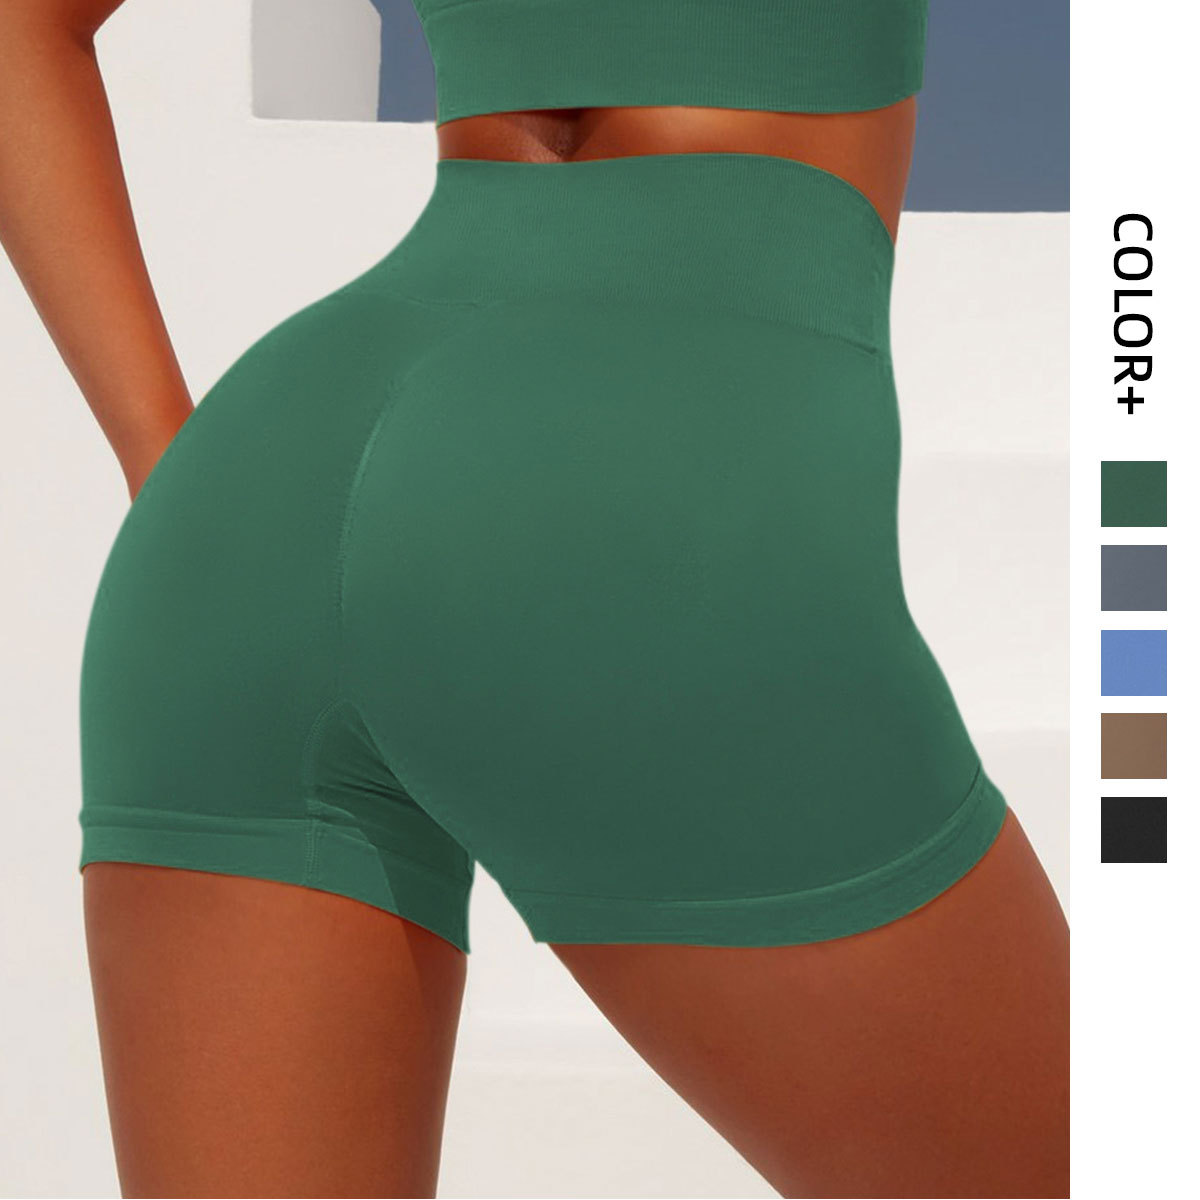 Custom Fit Classic Seamless Yoga Shorts | ZHIHUI